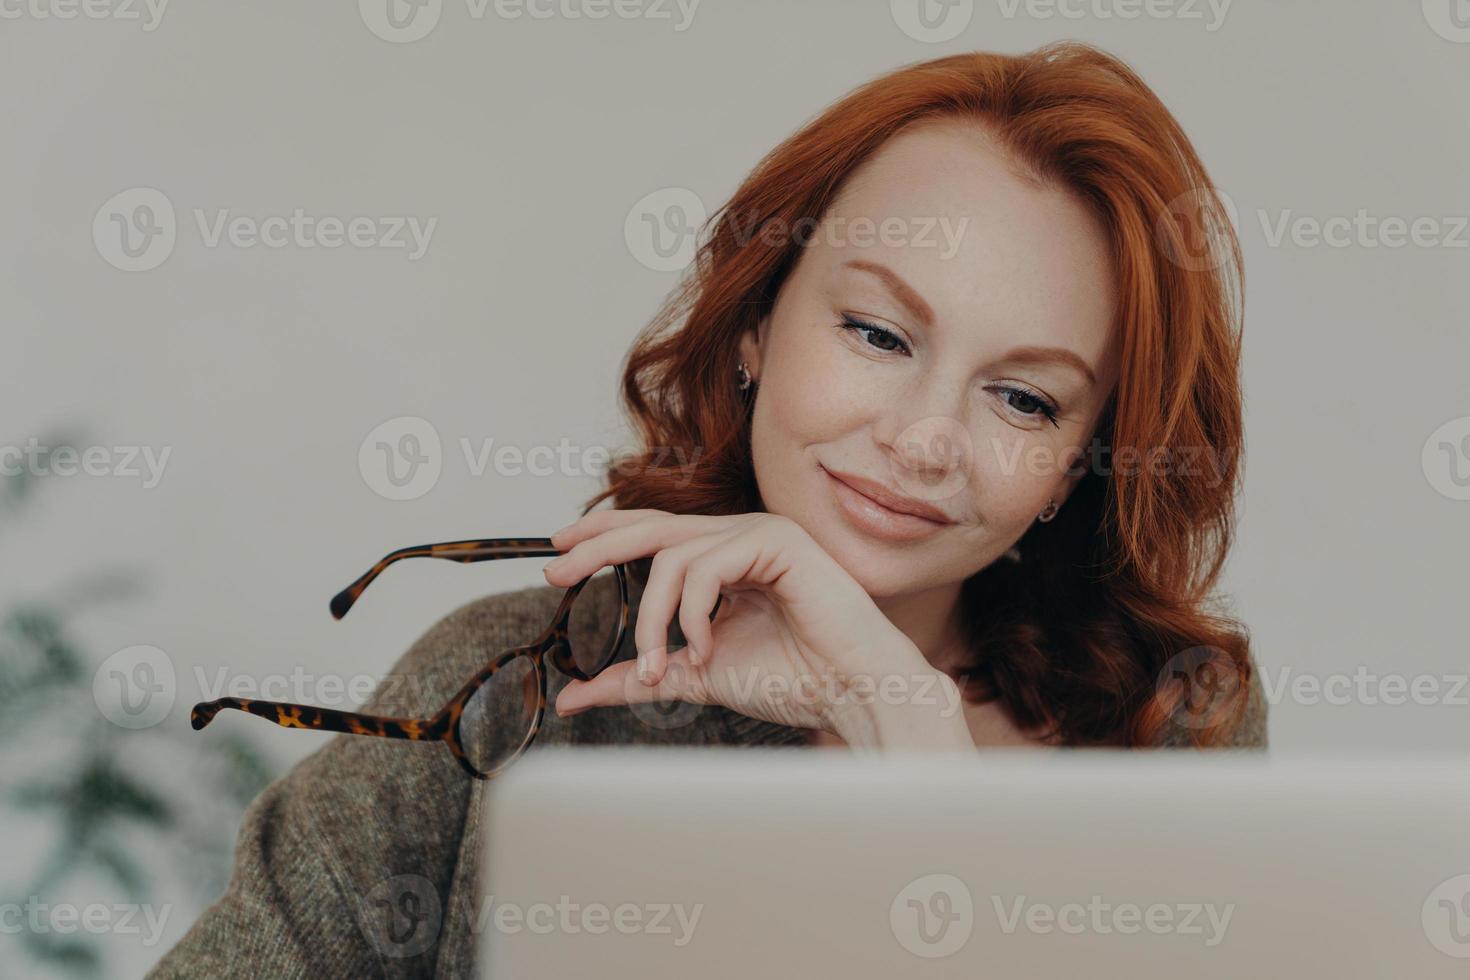 Foto von rothaariger Frau nimmt Brille ab, genießt Freizeit für E-Learning, konzentriert sich auf den Monitor des Laptop-Computers, erledigt Fernjobs. studentin bereitet sich auf prüfungen vor, nutzt moderne technologien